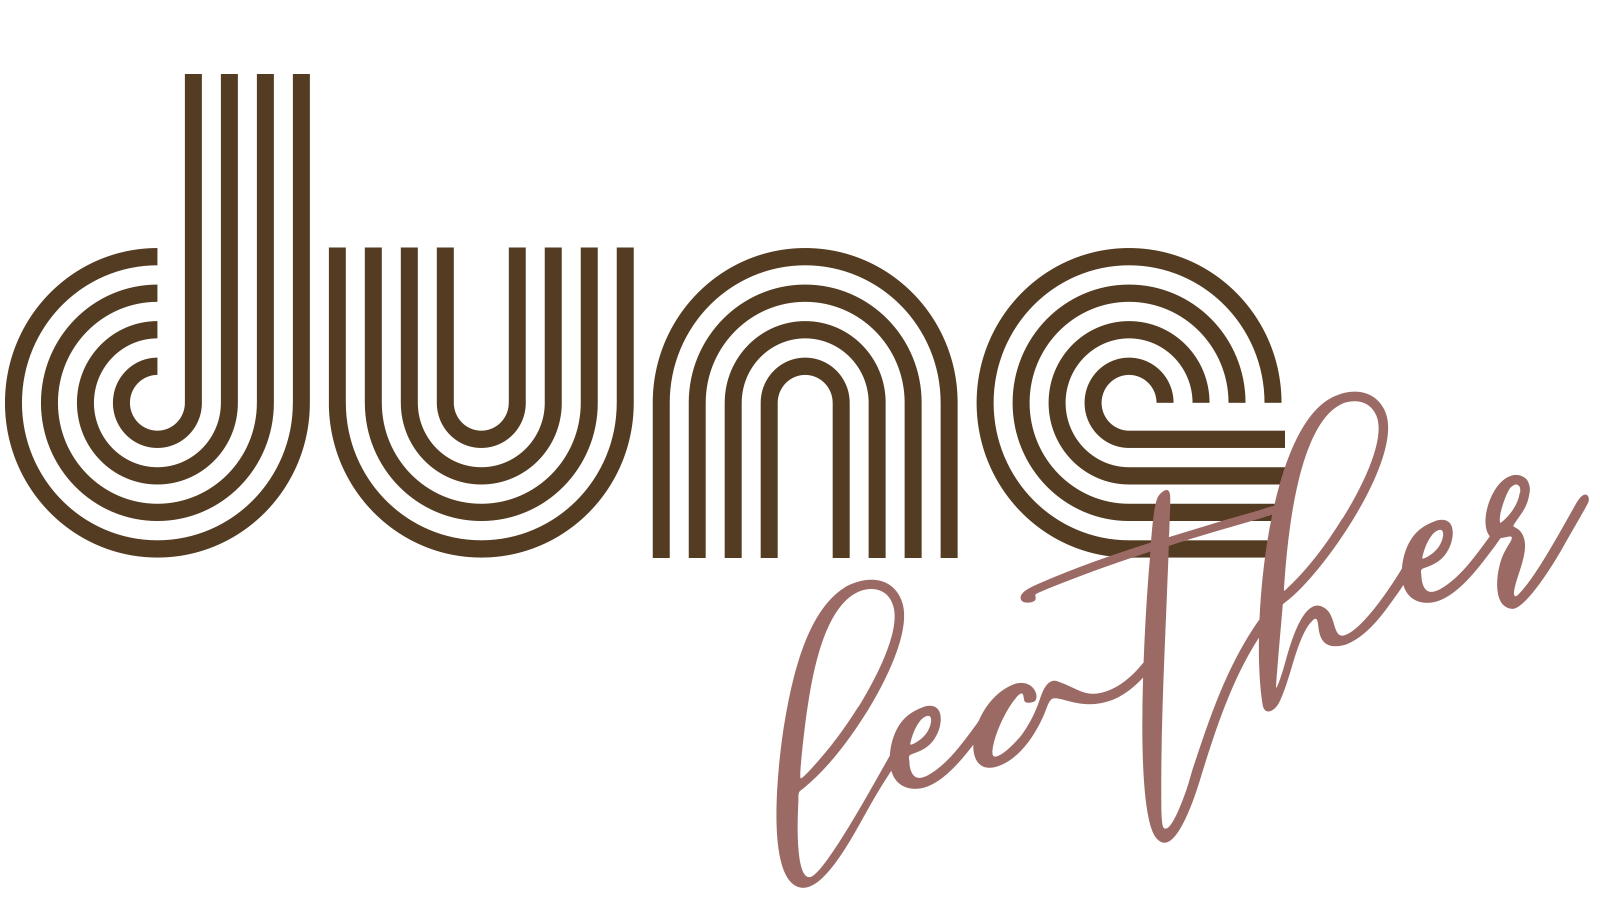 Dune Linen Logo